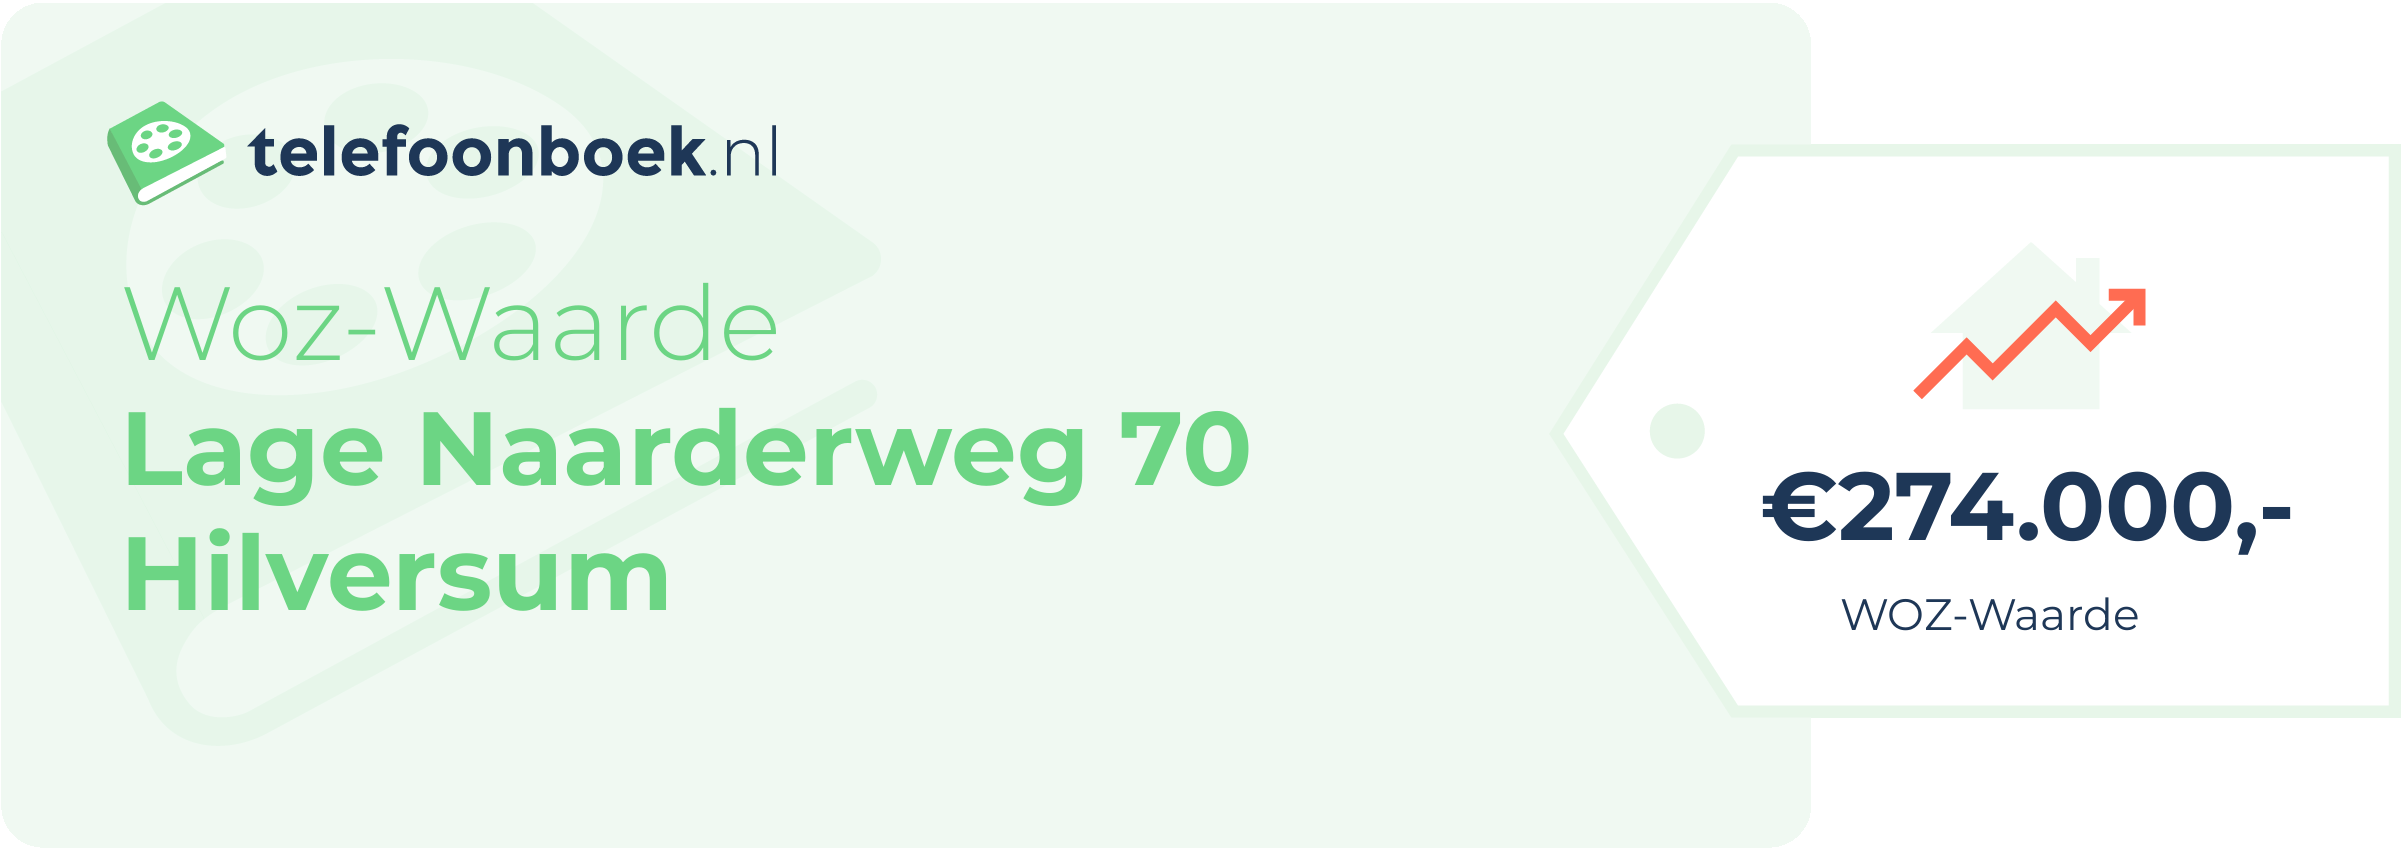 WOZ-waarde Lage Naarderweg 70 Hilversum